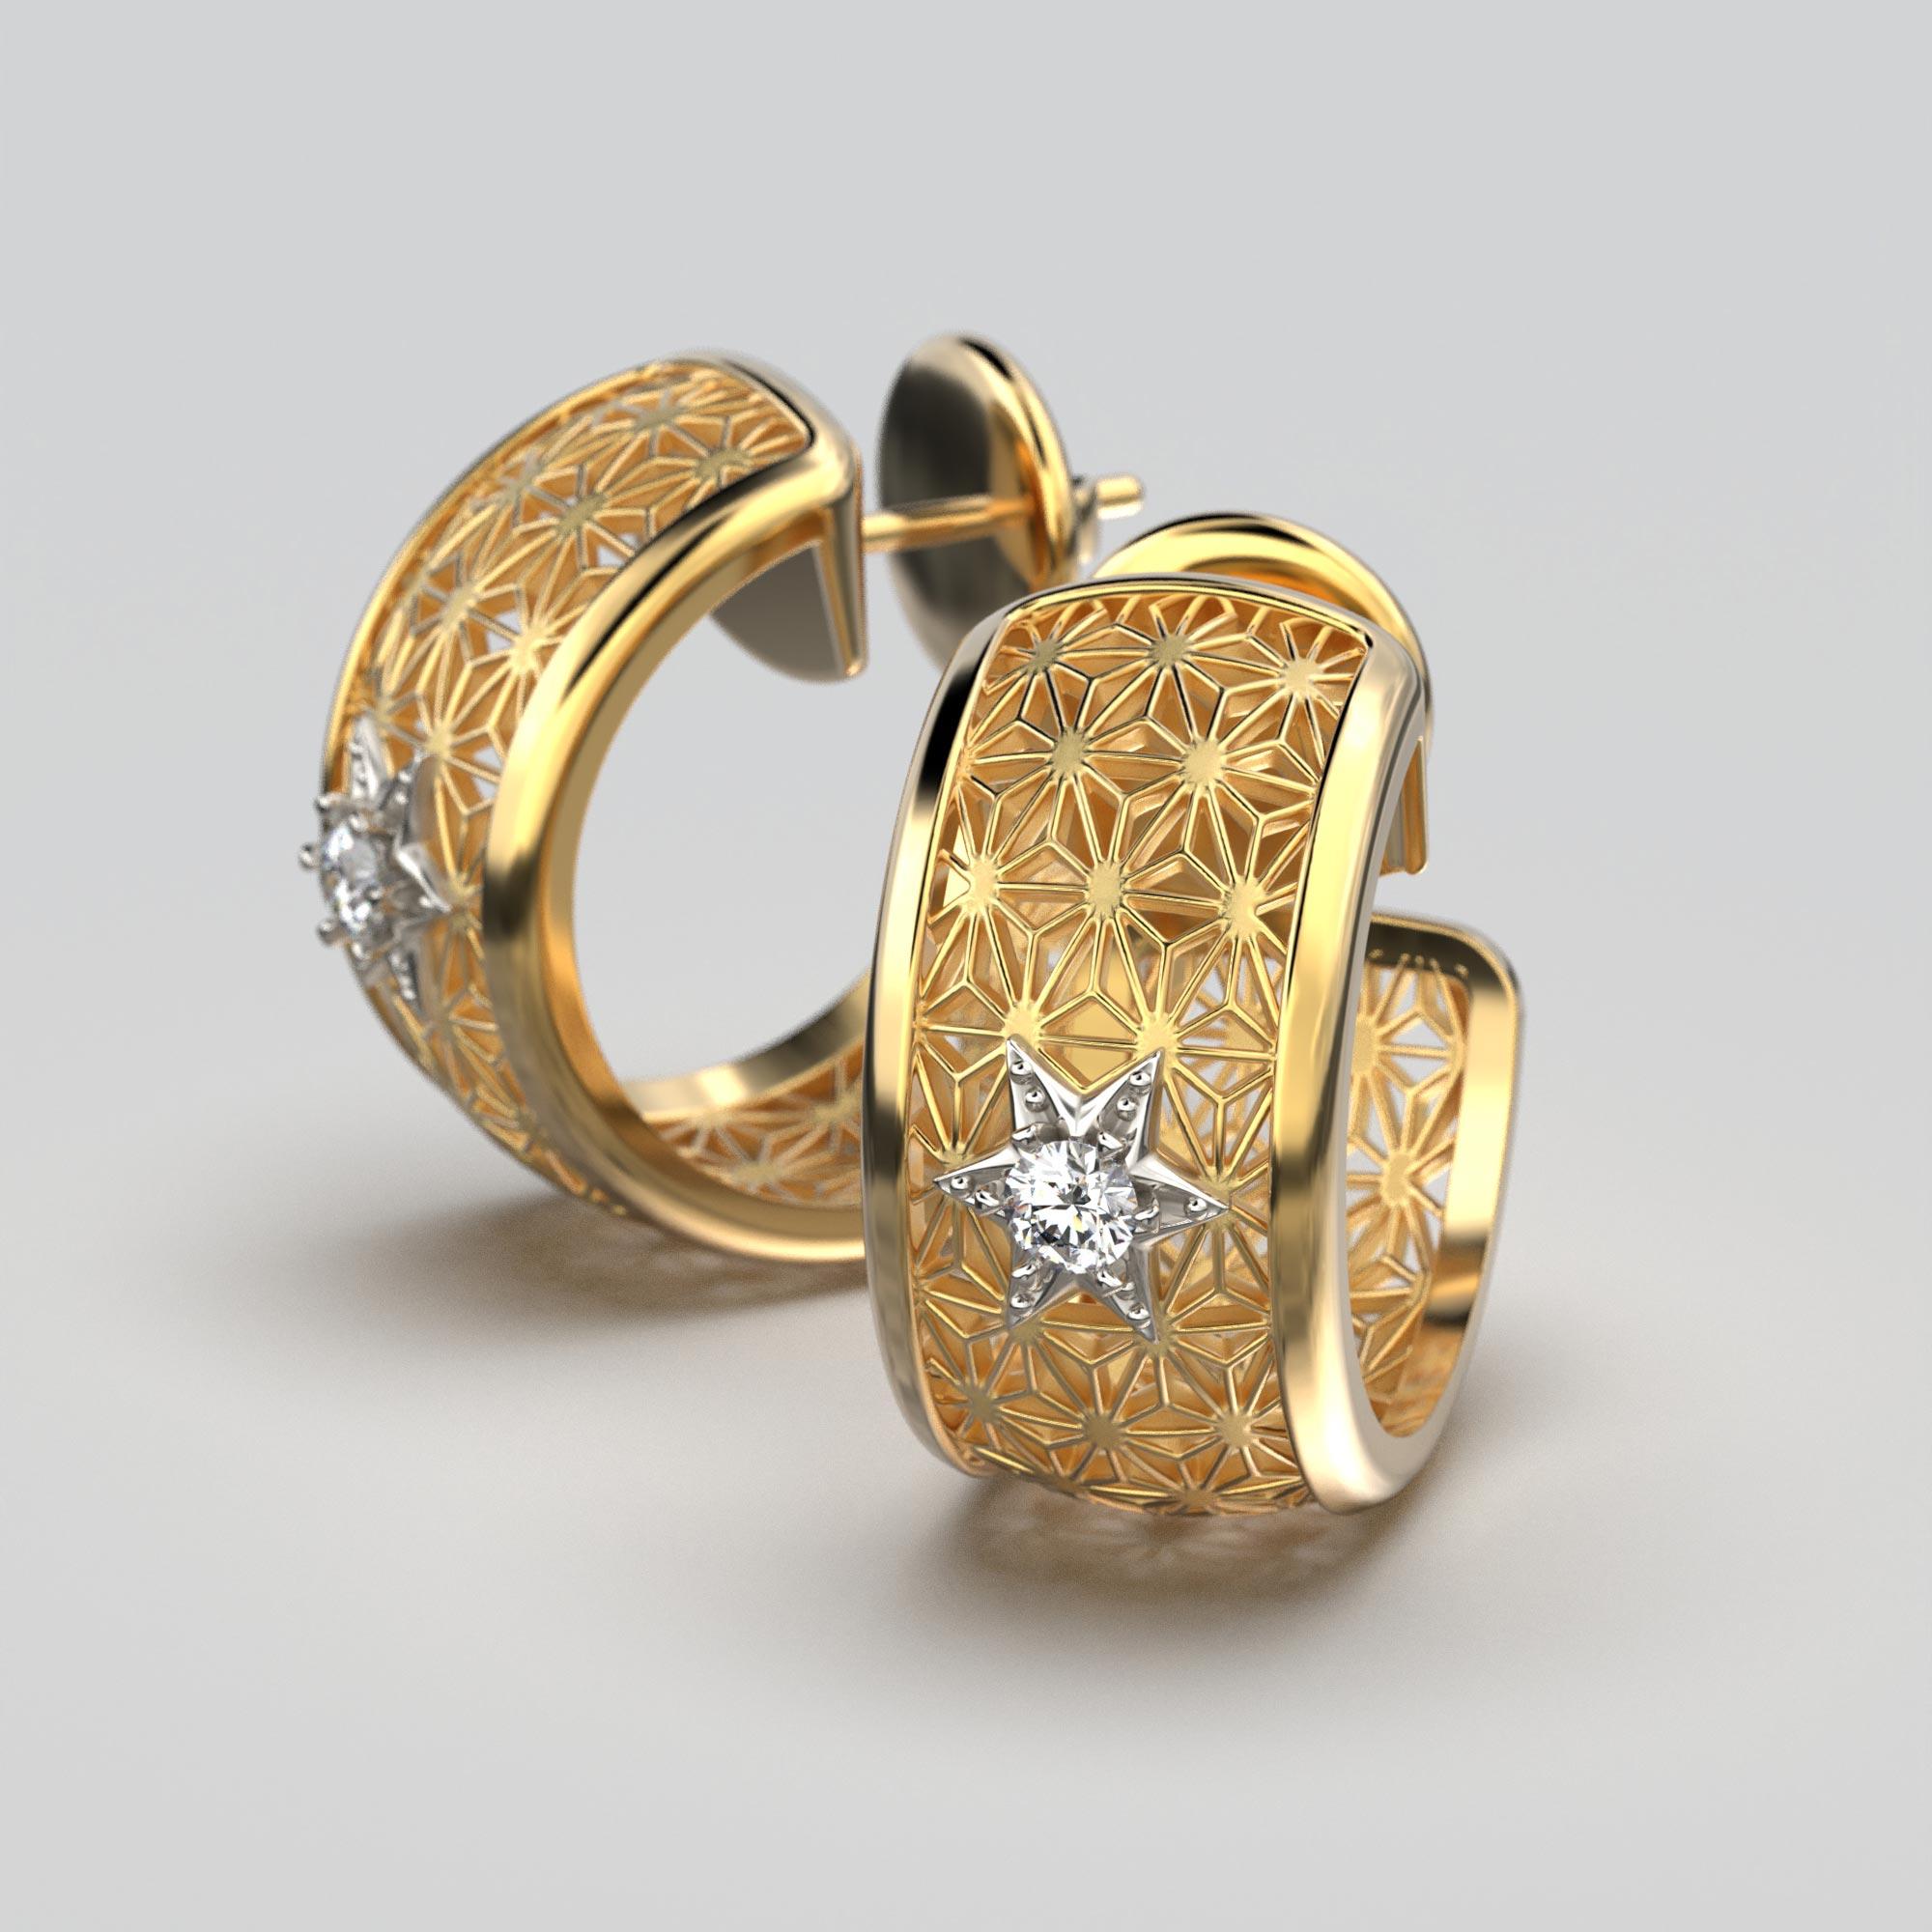 Gönnen Sie sich italienische Handwerkskunst mit unseren auf Bestellung gefertigten, atemberaubenden 18k Gold Open Hoop Earrings. Diese fachmännisch in zwei luxuriösen Goldtönen gefertigten Ohrringe bestechen durch ein faszinierendes japanisches